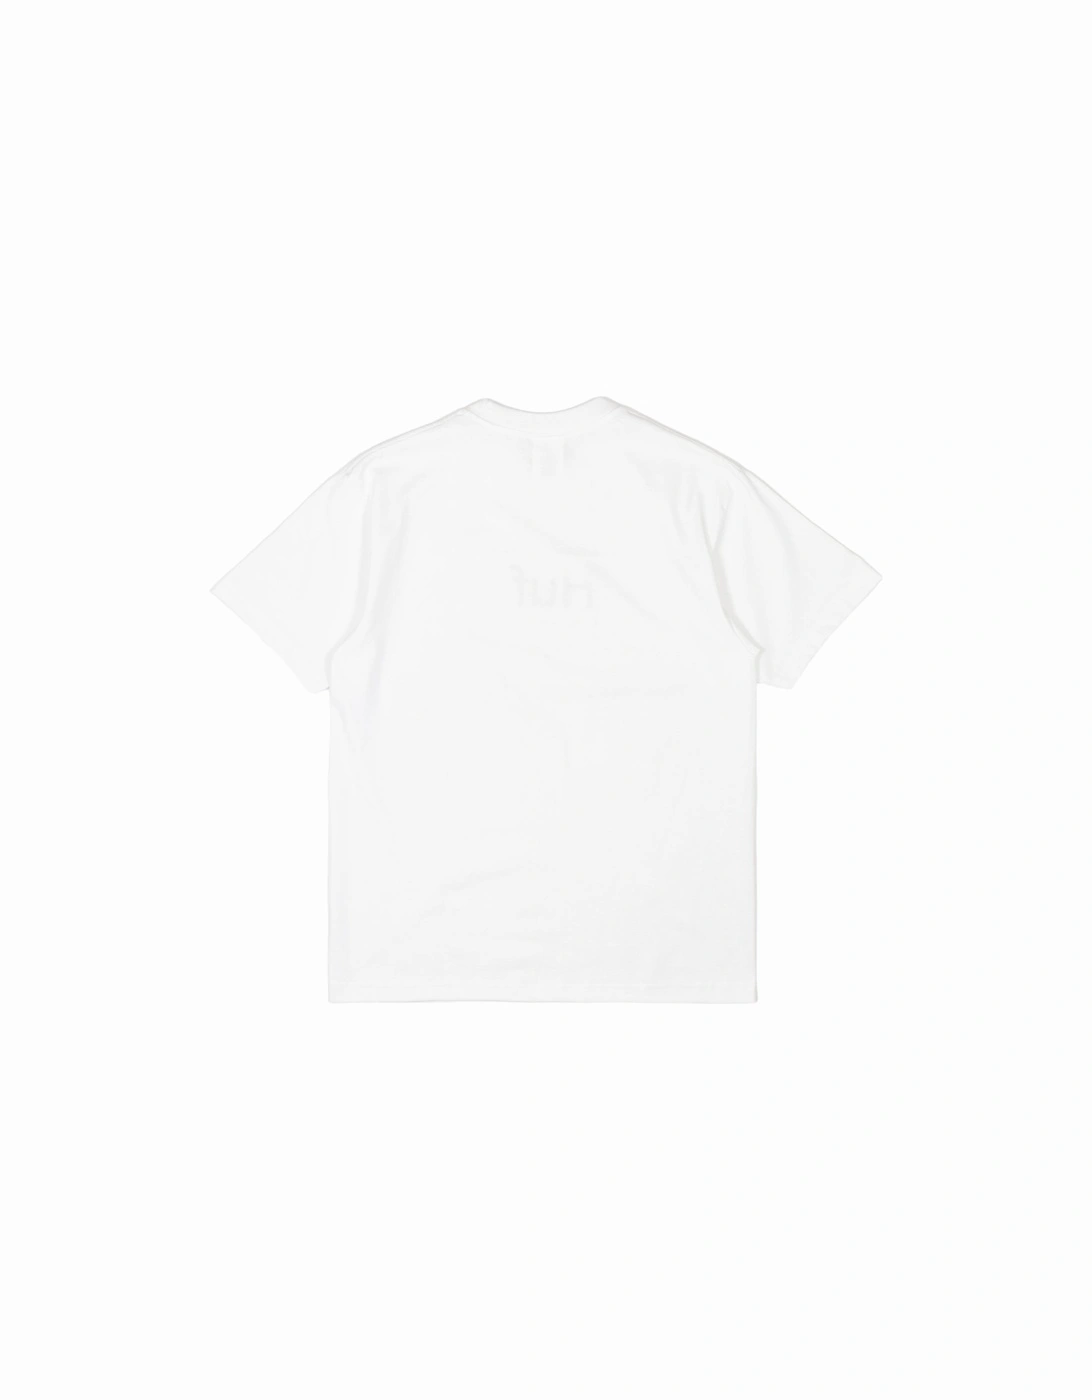 Deadline T-Shirt - White